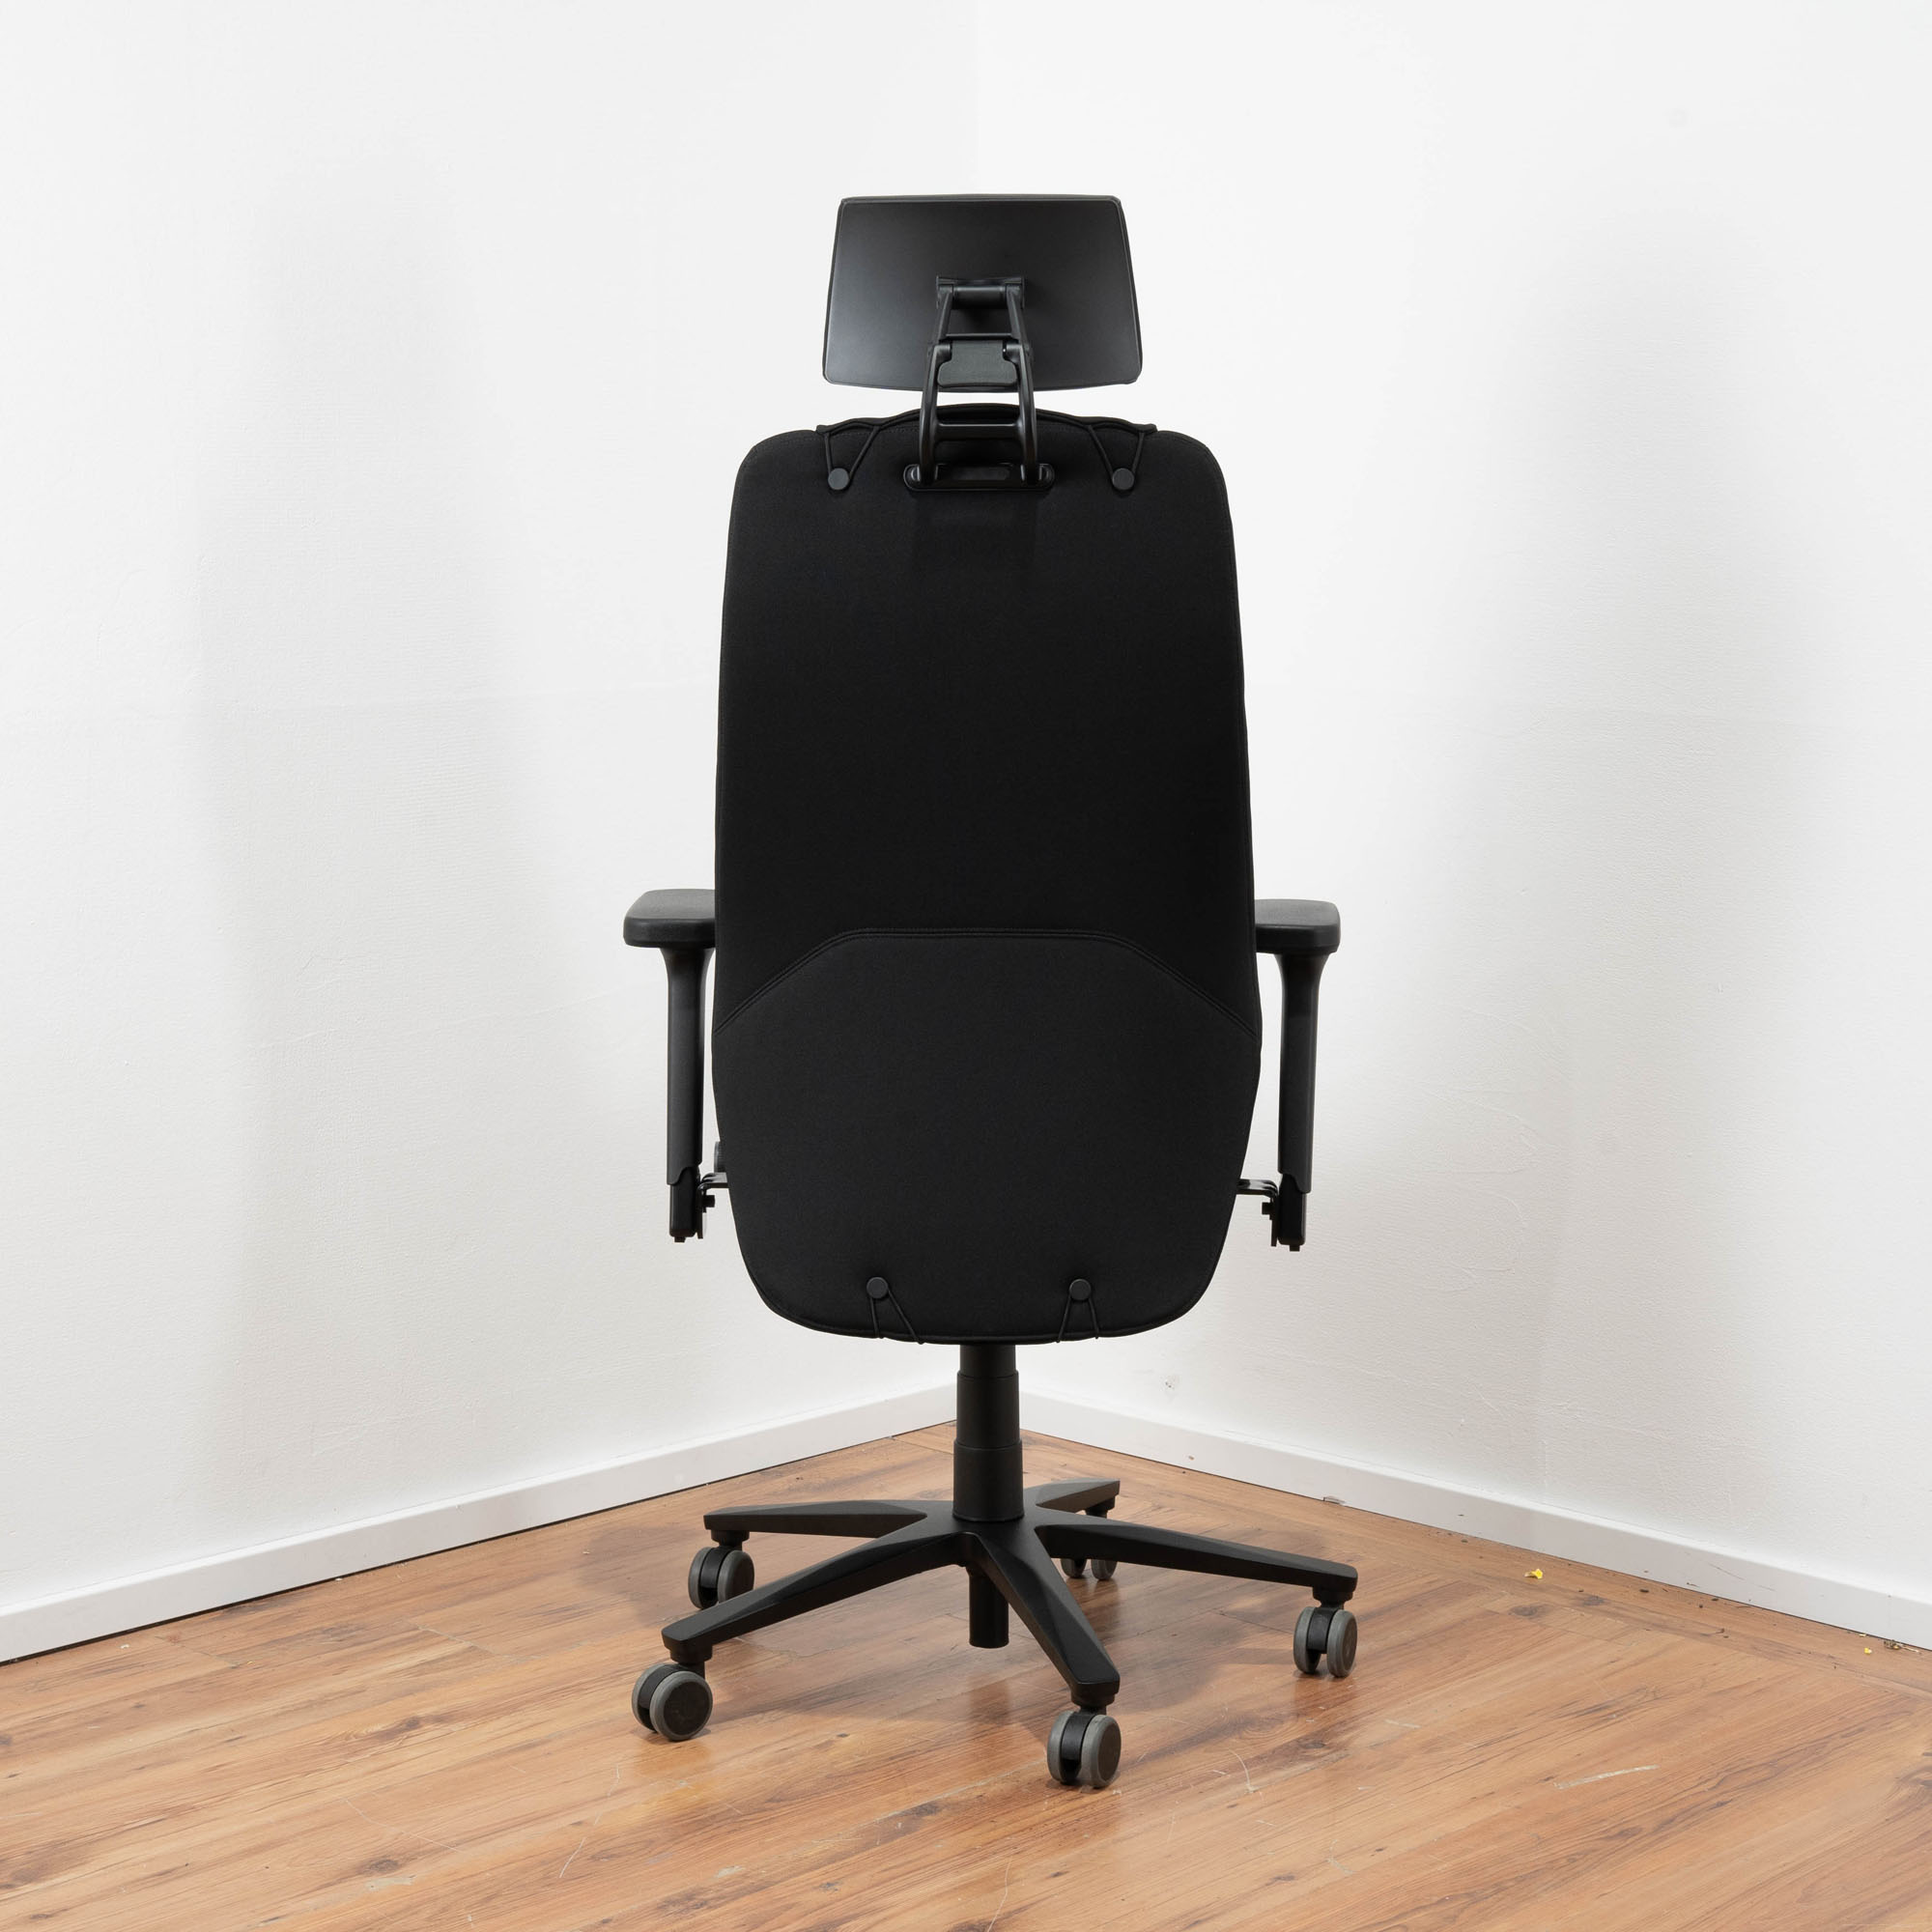 NEUWARE: Interstuhl "TwentyFour IS 5" Bürodrehstuhl mit Kopfstütze - Stoff schwarz mit abnehmbarem Topper - bis 150kg Körpergewicht